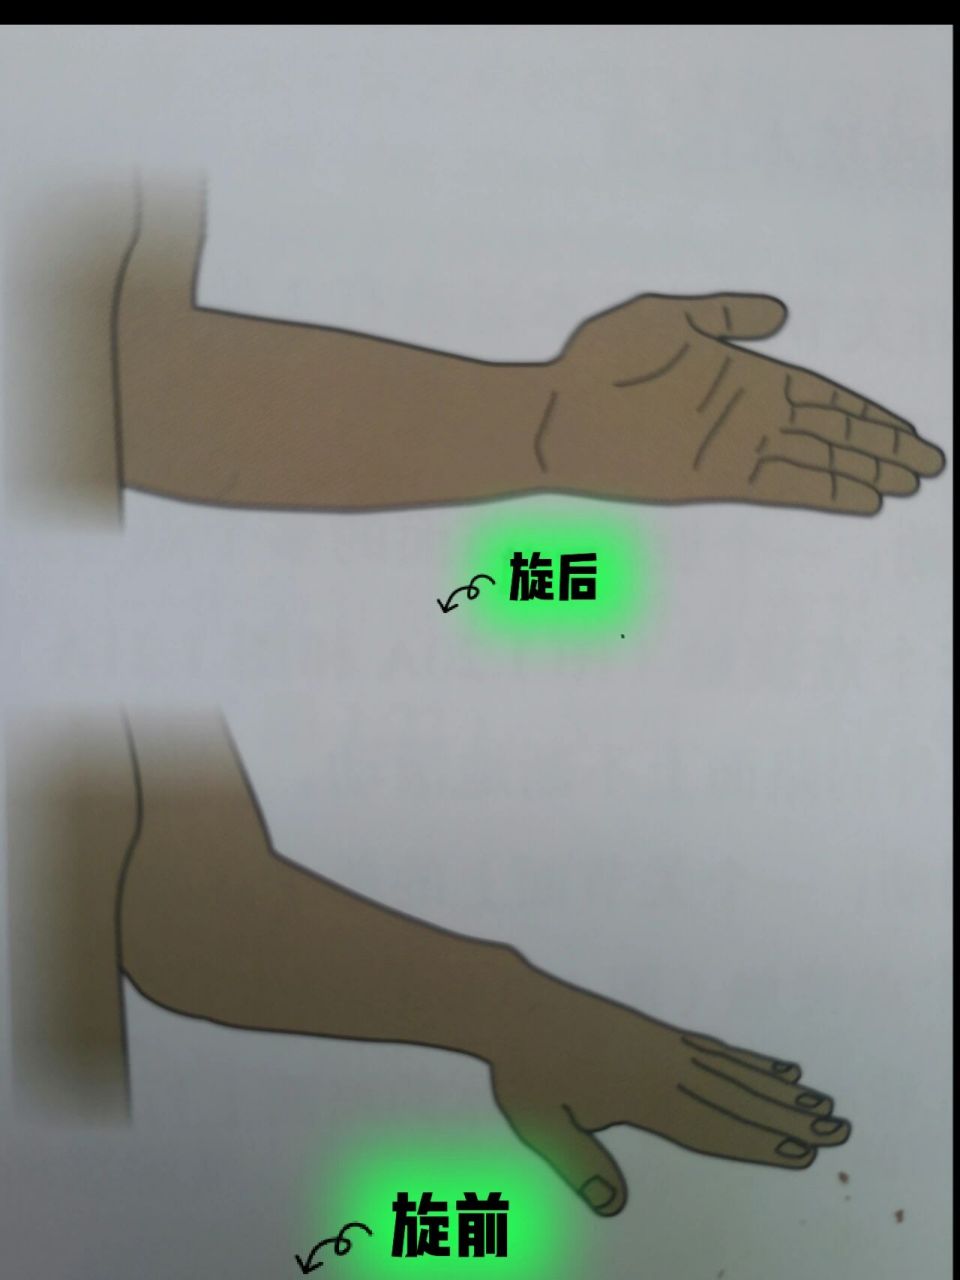 解剖术语,旋后 旋前 解剖学姿势 旋前:指前臂的旋转,使掌心向后的运动